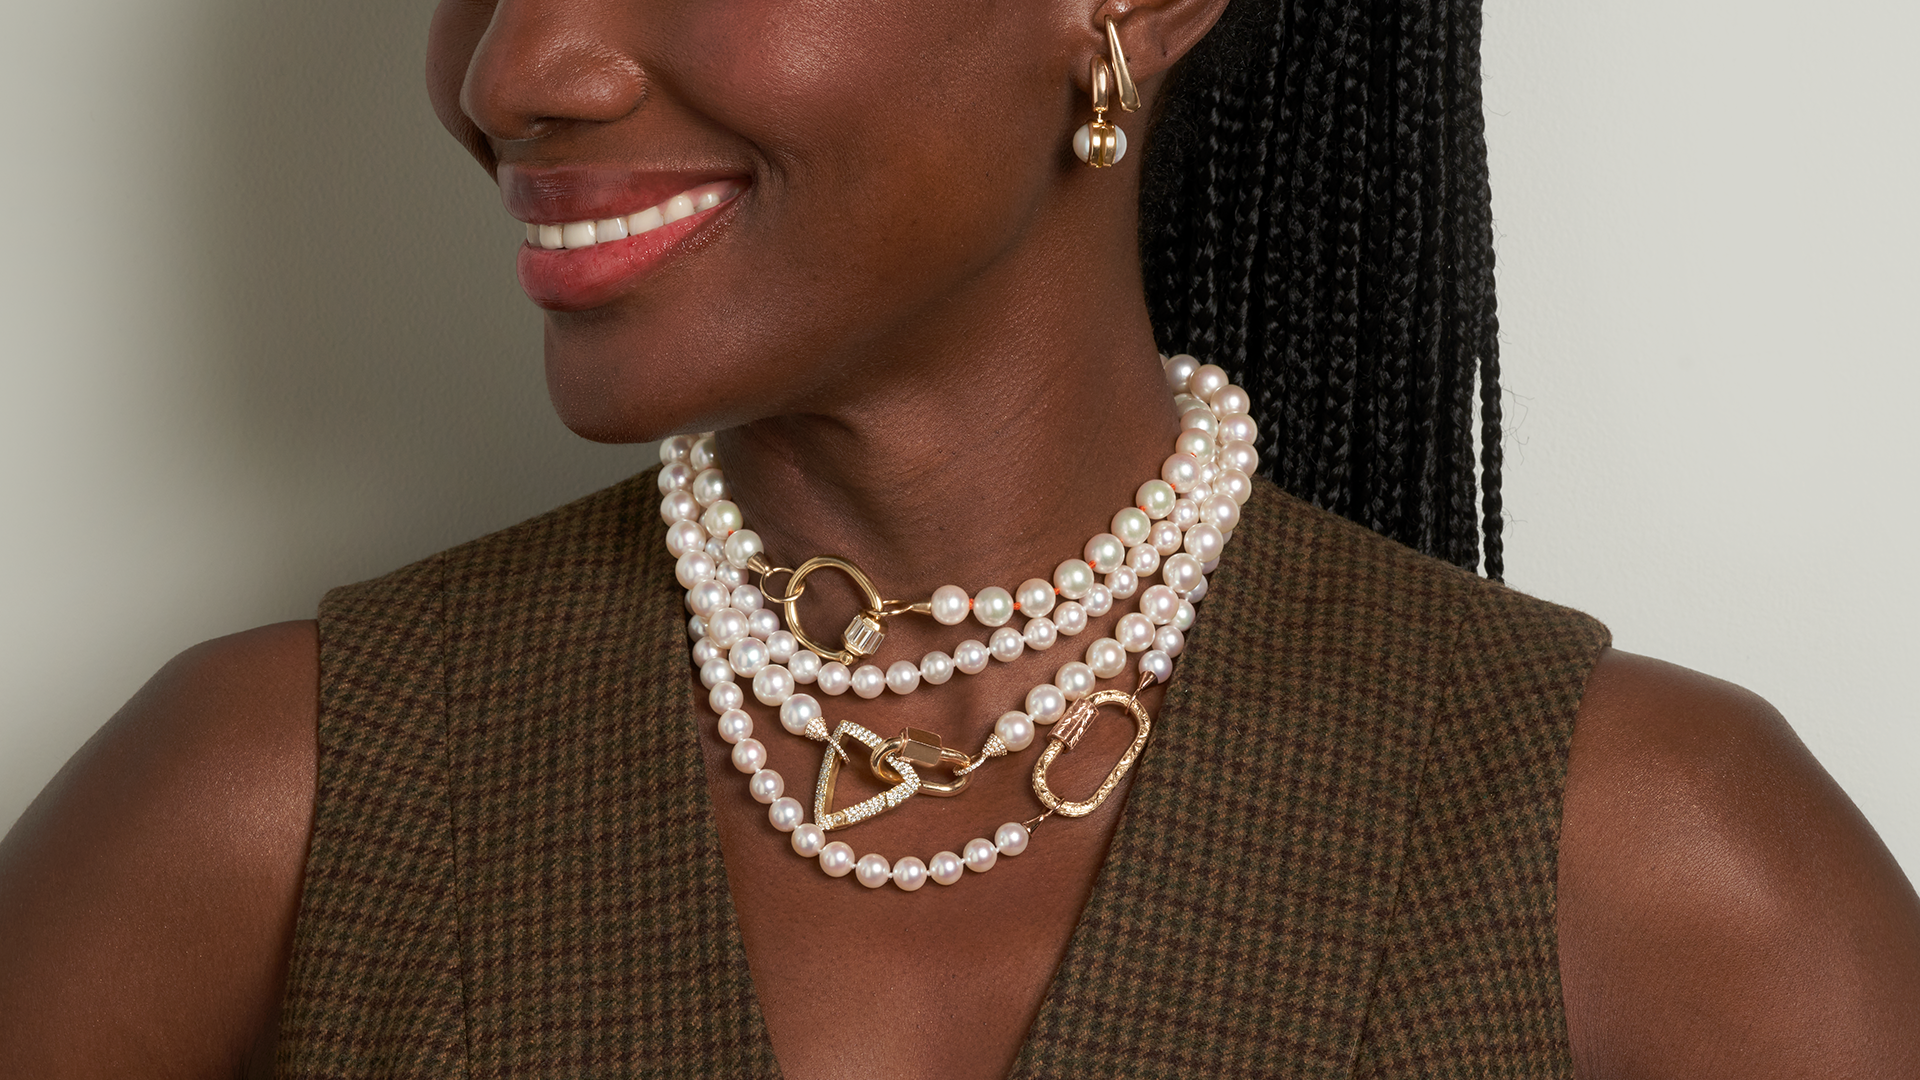 Woman wearing custom pearl jewelry